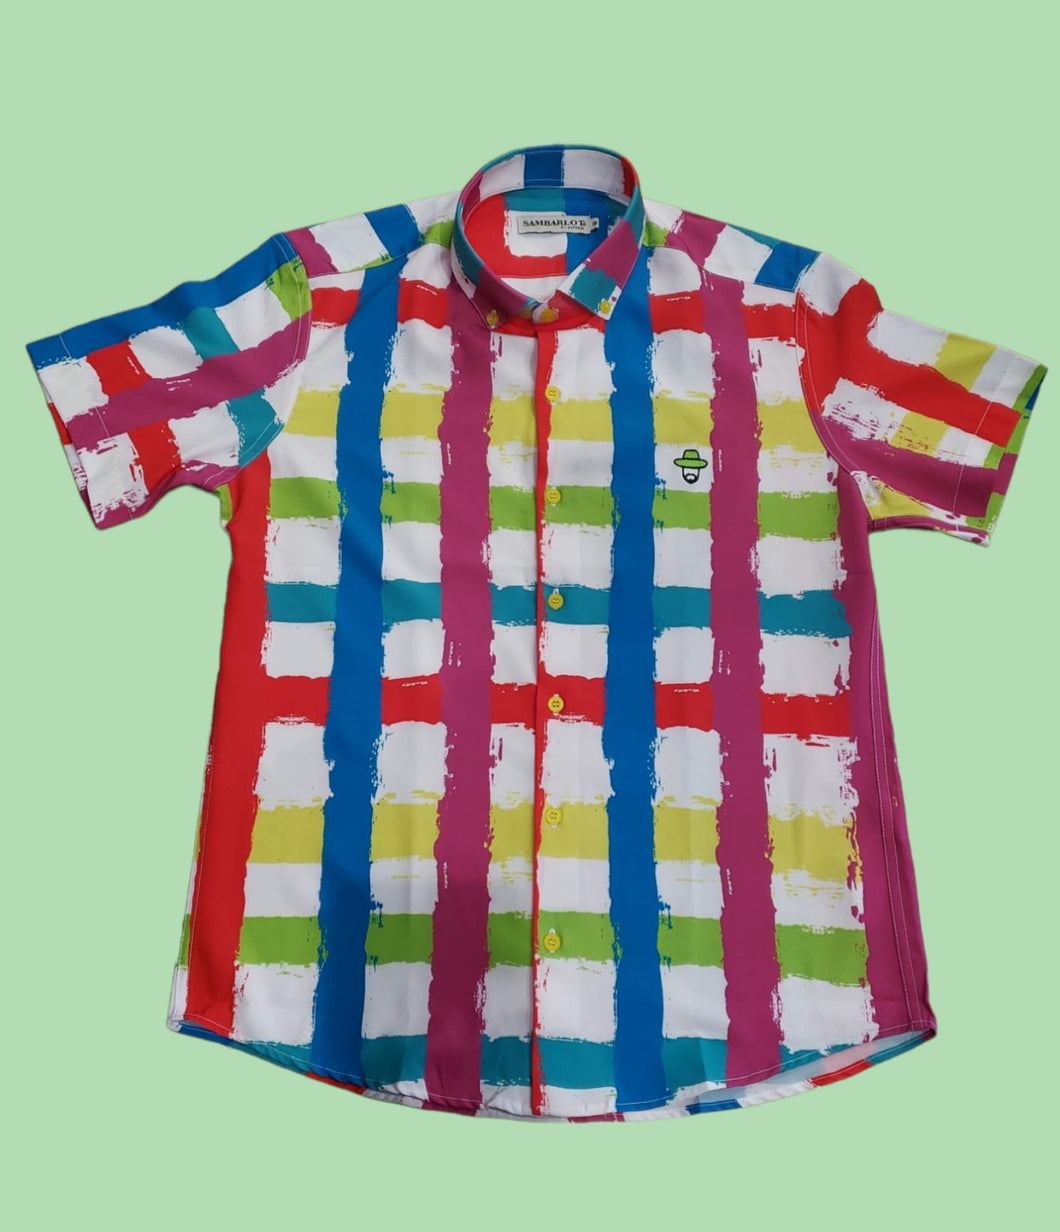 Sambarlot Colored Grid Shirt